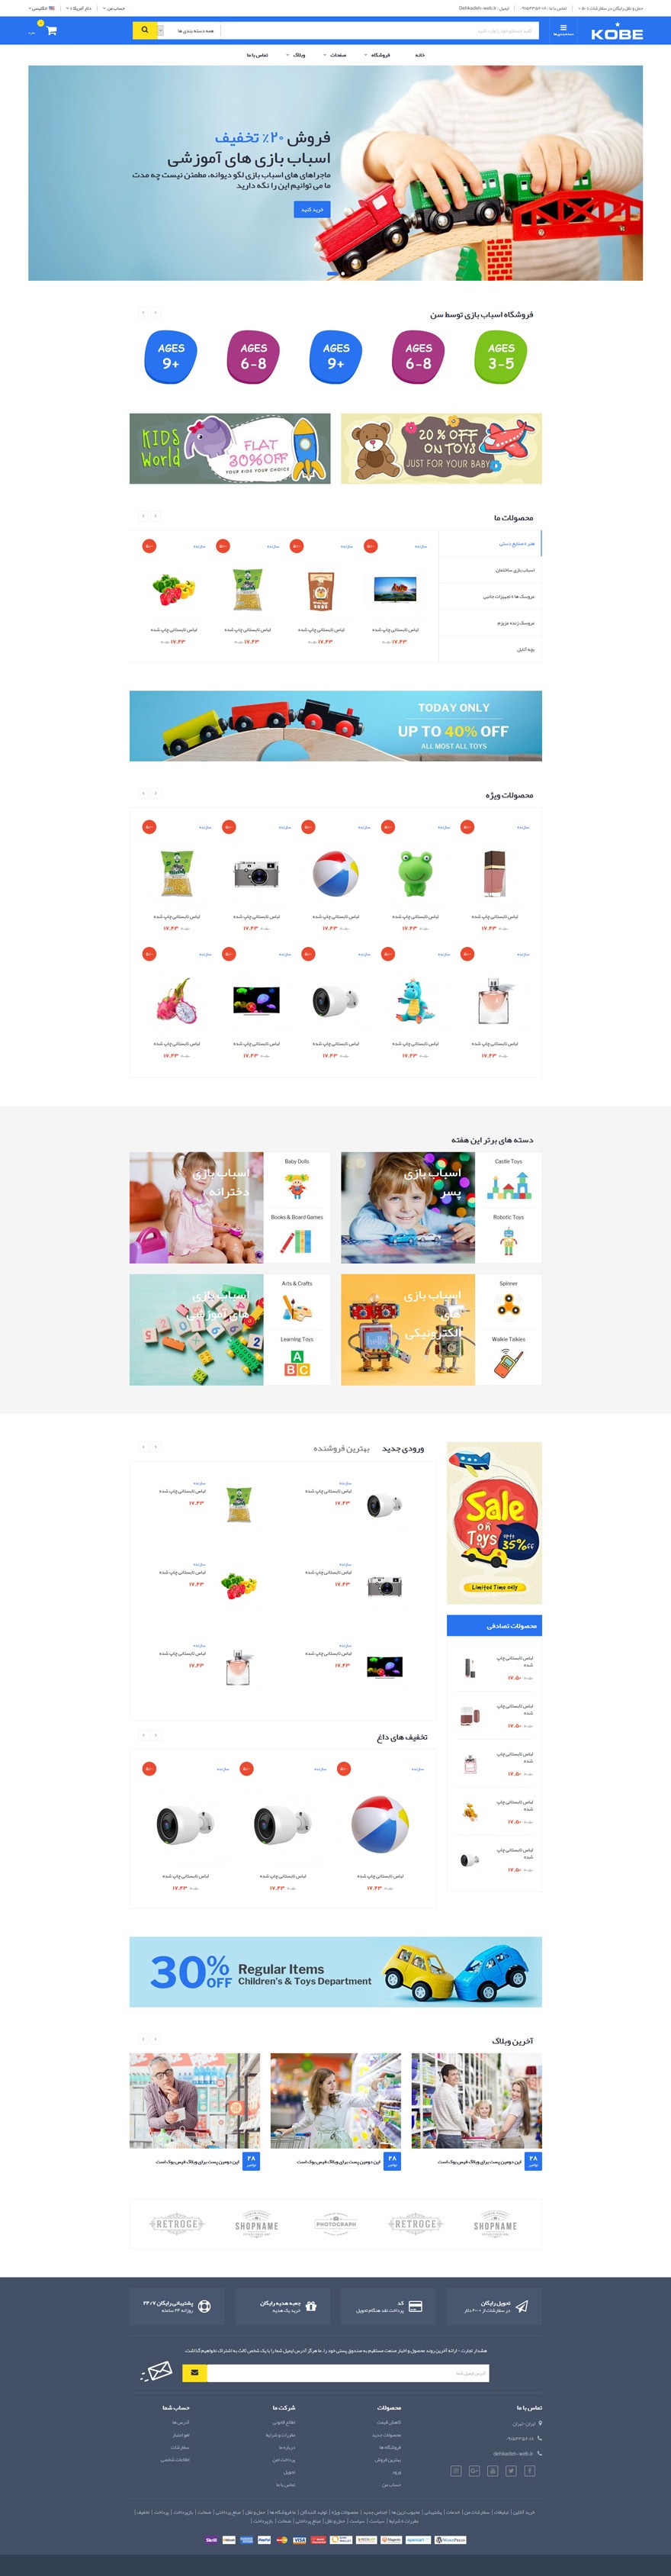 طراحی سایت فروشگاه اسباب بازی